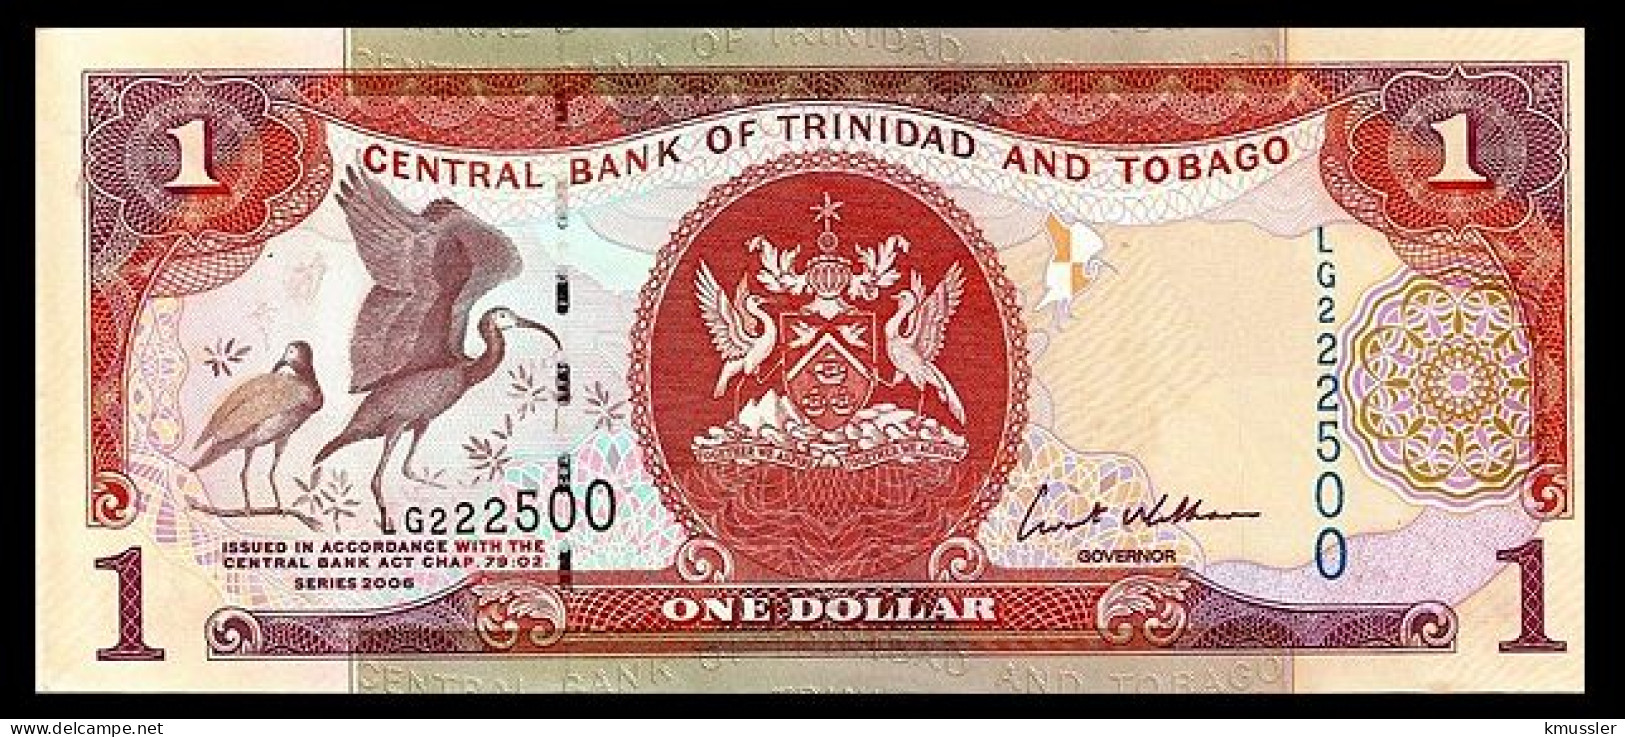 # # # Banknote Trinidad Und Tobago 1 Dollar 2002 UNC # # # - Trinidad Y Tobago